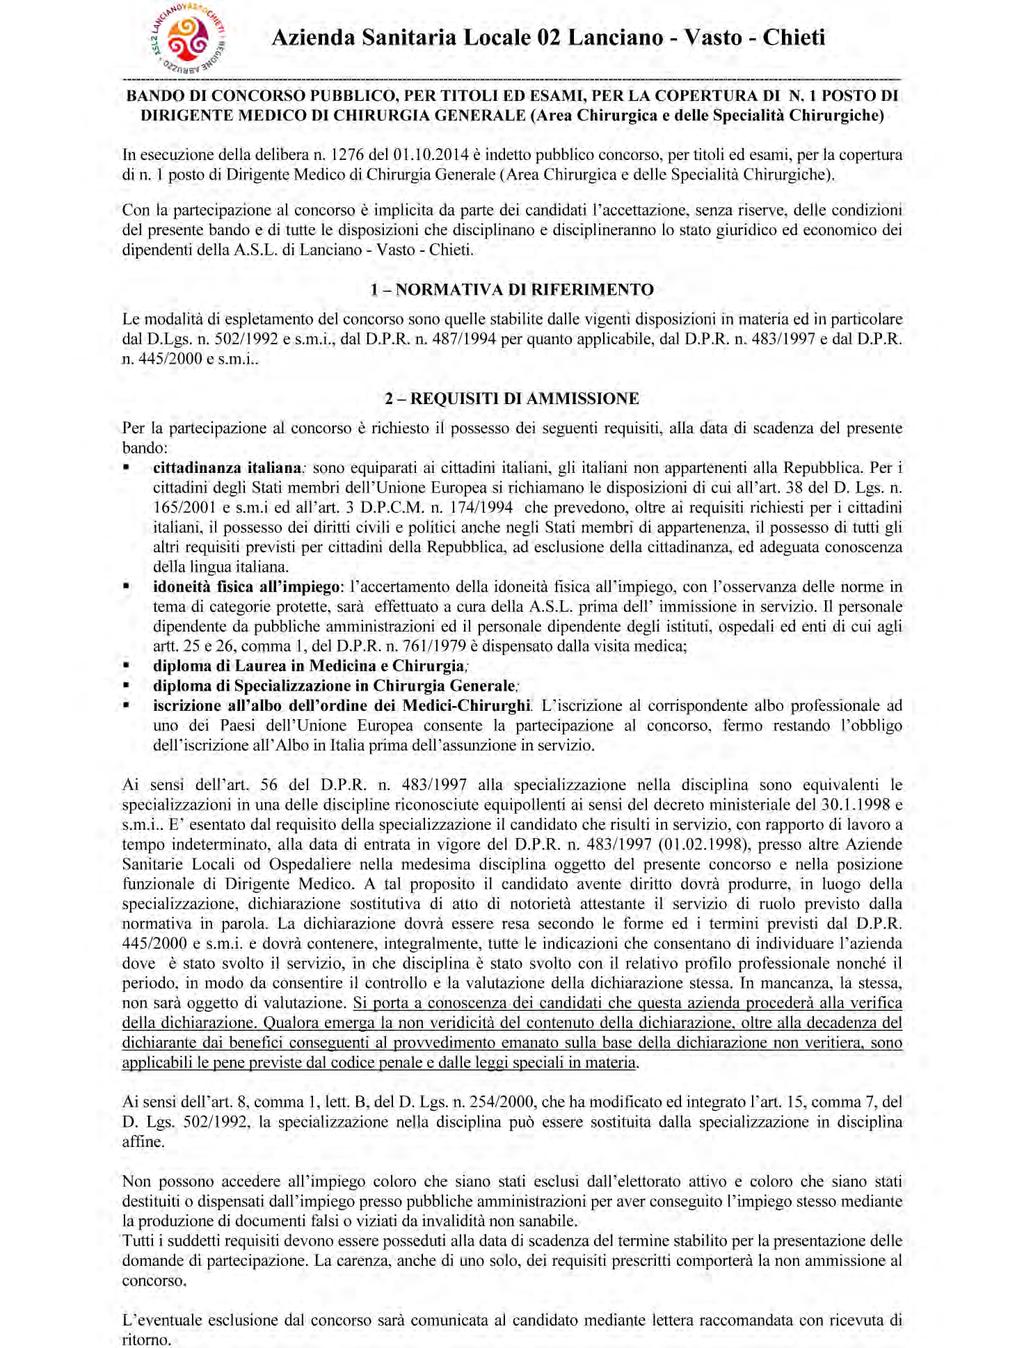 Anno XLVI - N. 12 Speciale (04.02.2015) Bollettino Ufficiale della Regione Abruzzo Pag. 21 AZIENDA SANITARIA LOCALE N.